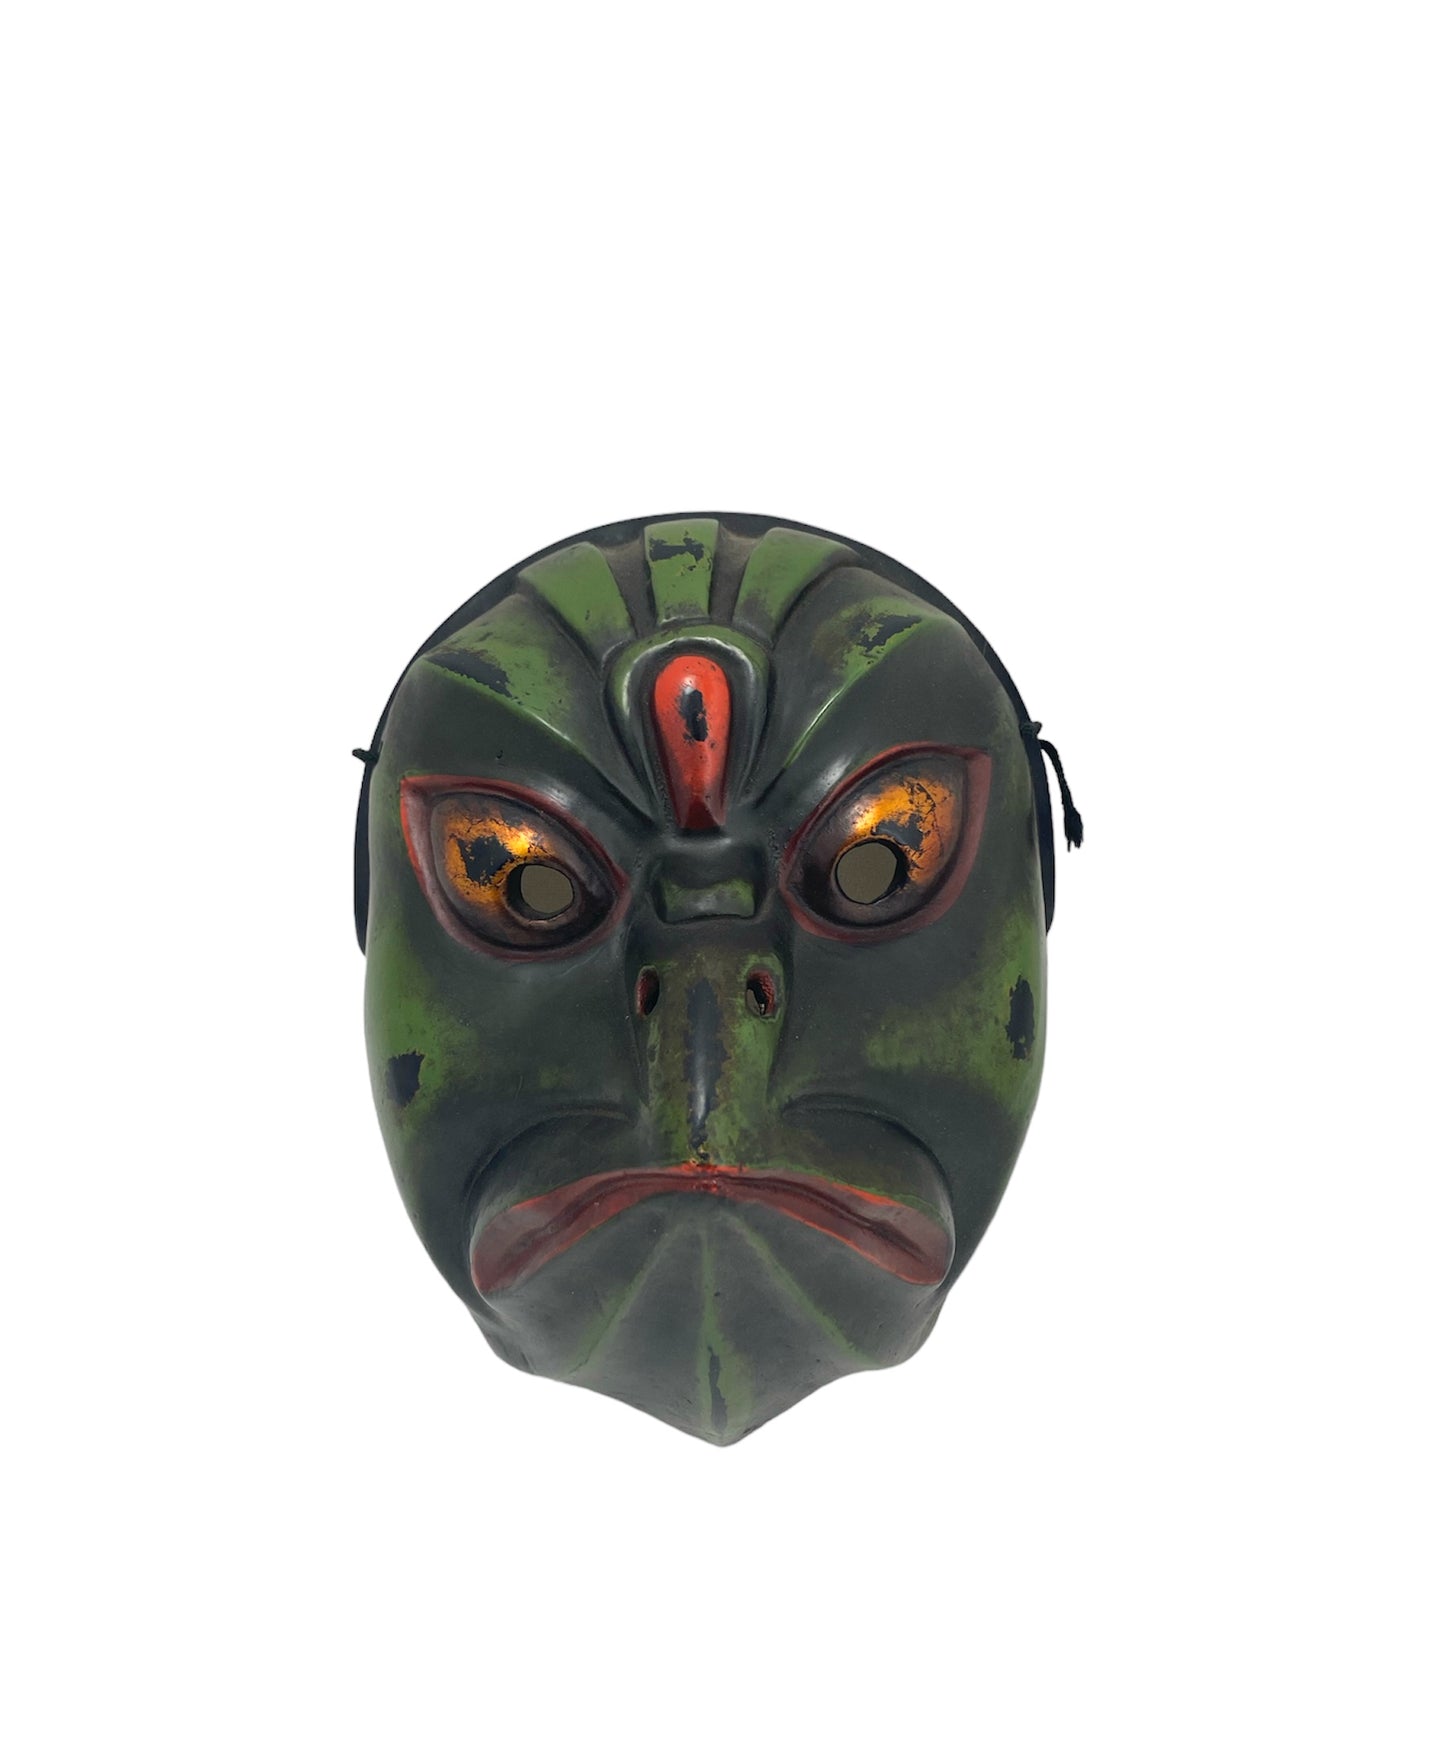 KARASU Mask/Kagura masks - to ward off evil spirits